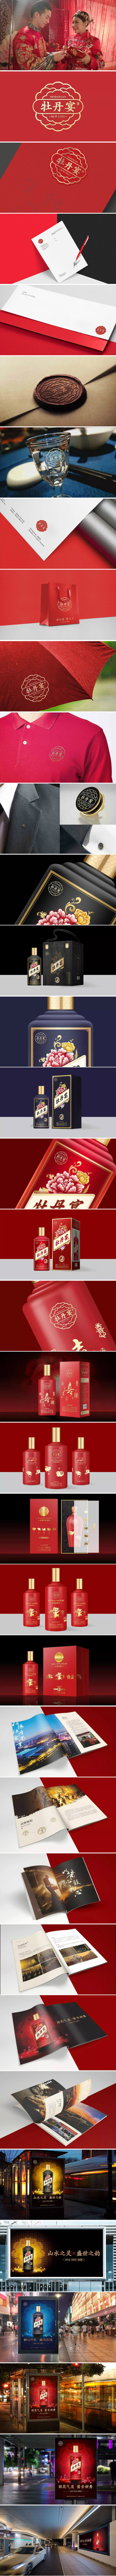 勤略品牌设计：洛阳餐旅集团牡丹宴酒品牌设计案例（来源：http://www.qinluecn.com/case/show-335.html）